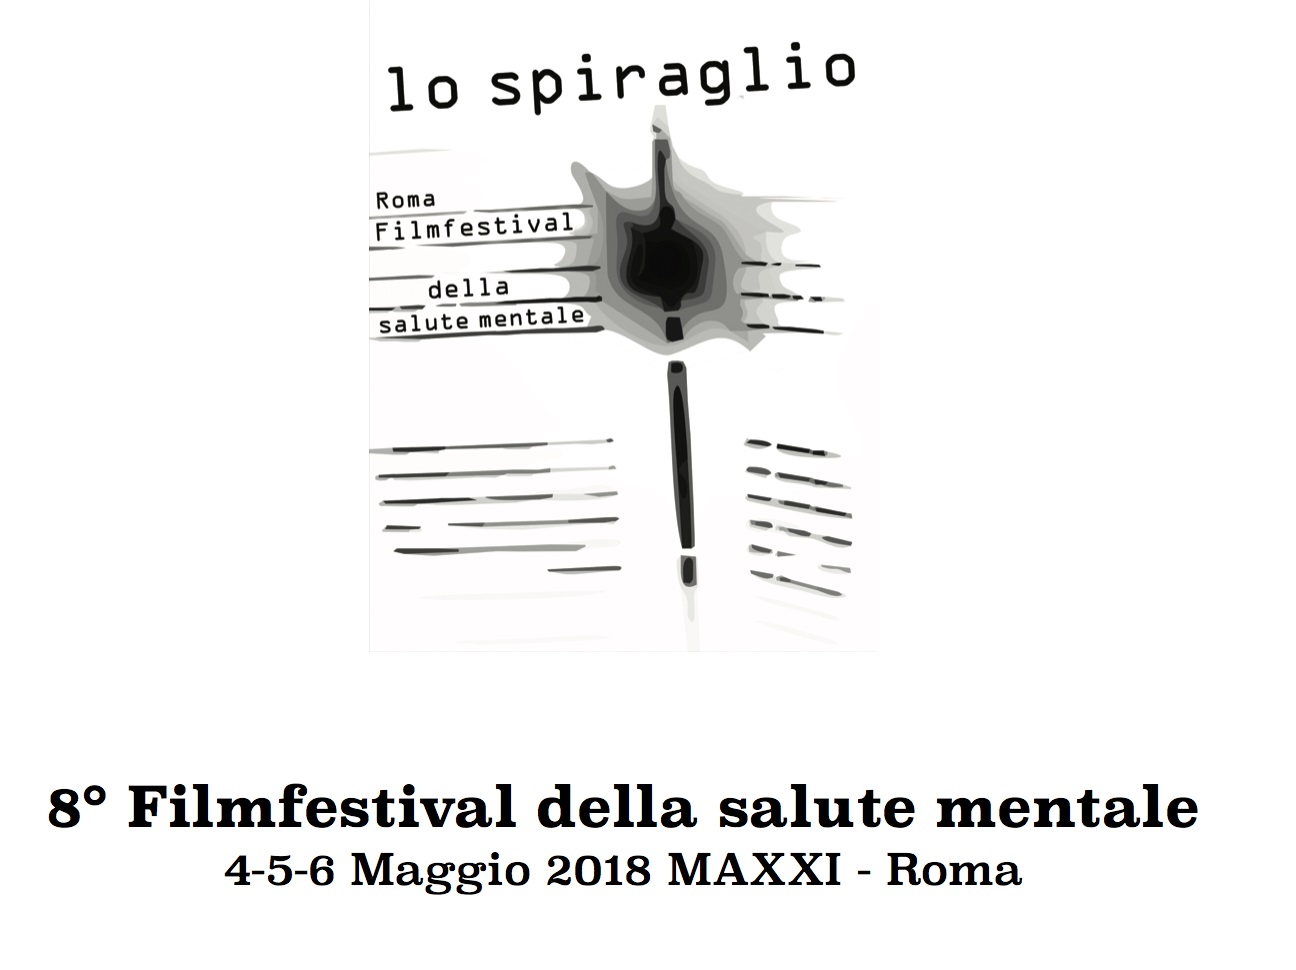 Cinema: Lo Spiraglio FilmFestival iscrizioni fino al 12 marzo